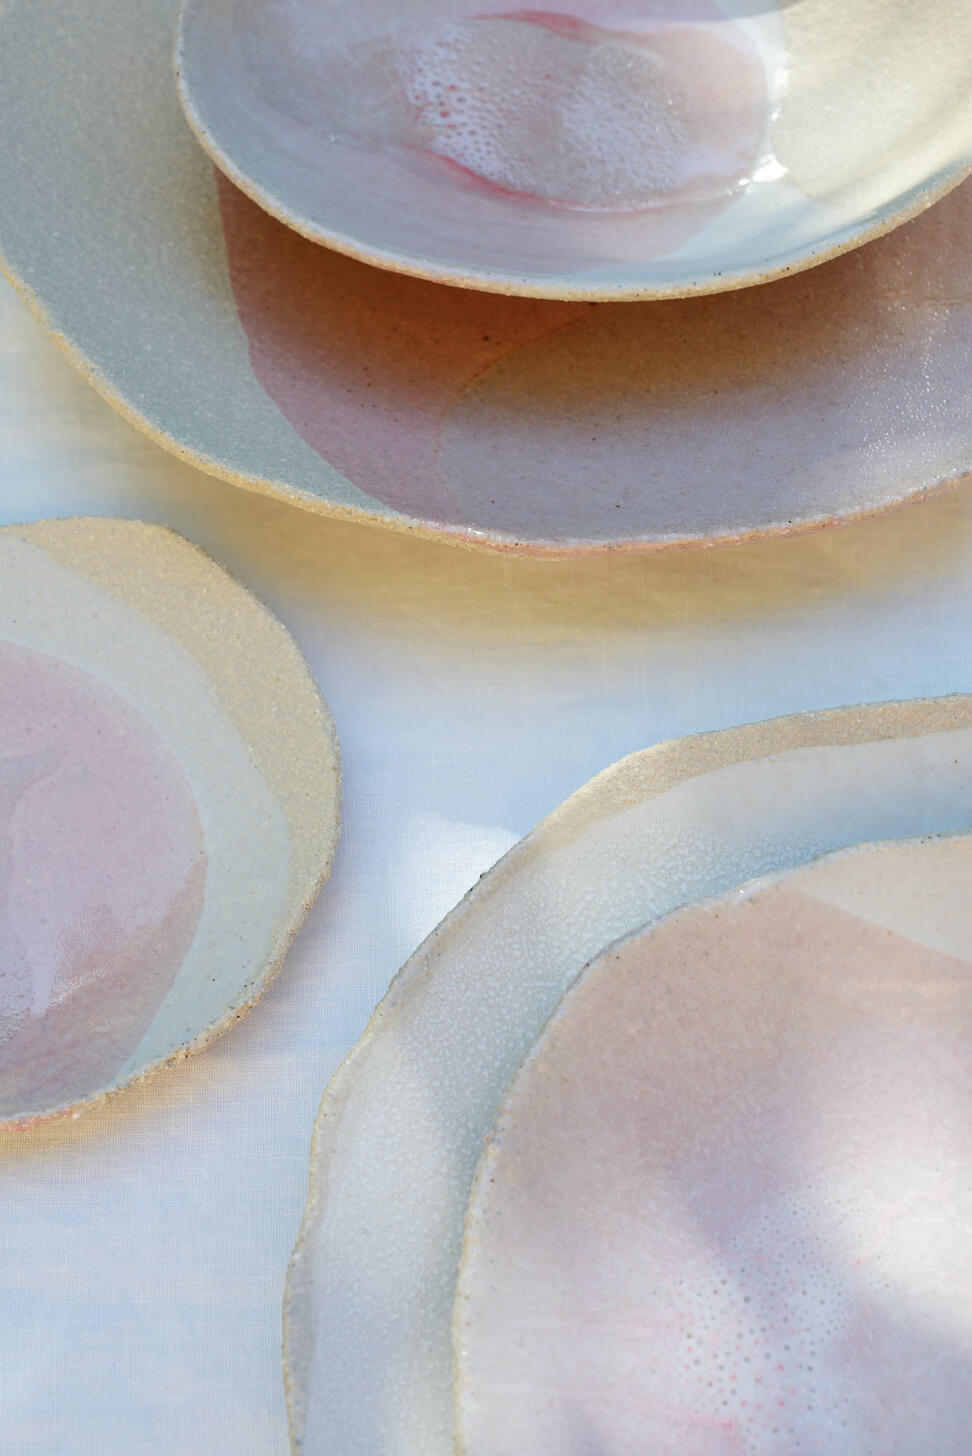 plate l wabi rose ceramic manufacturer